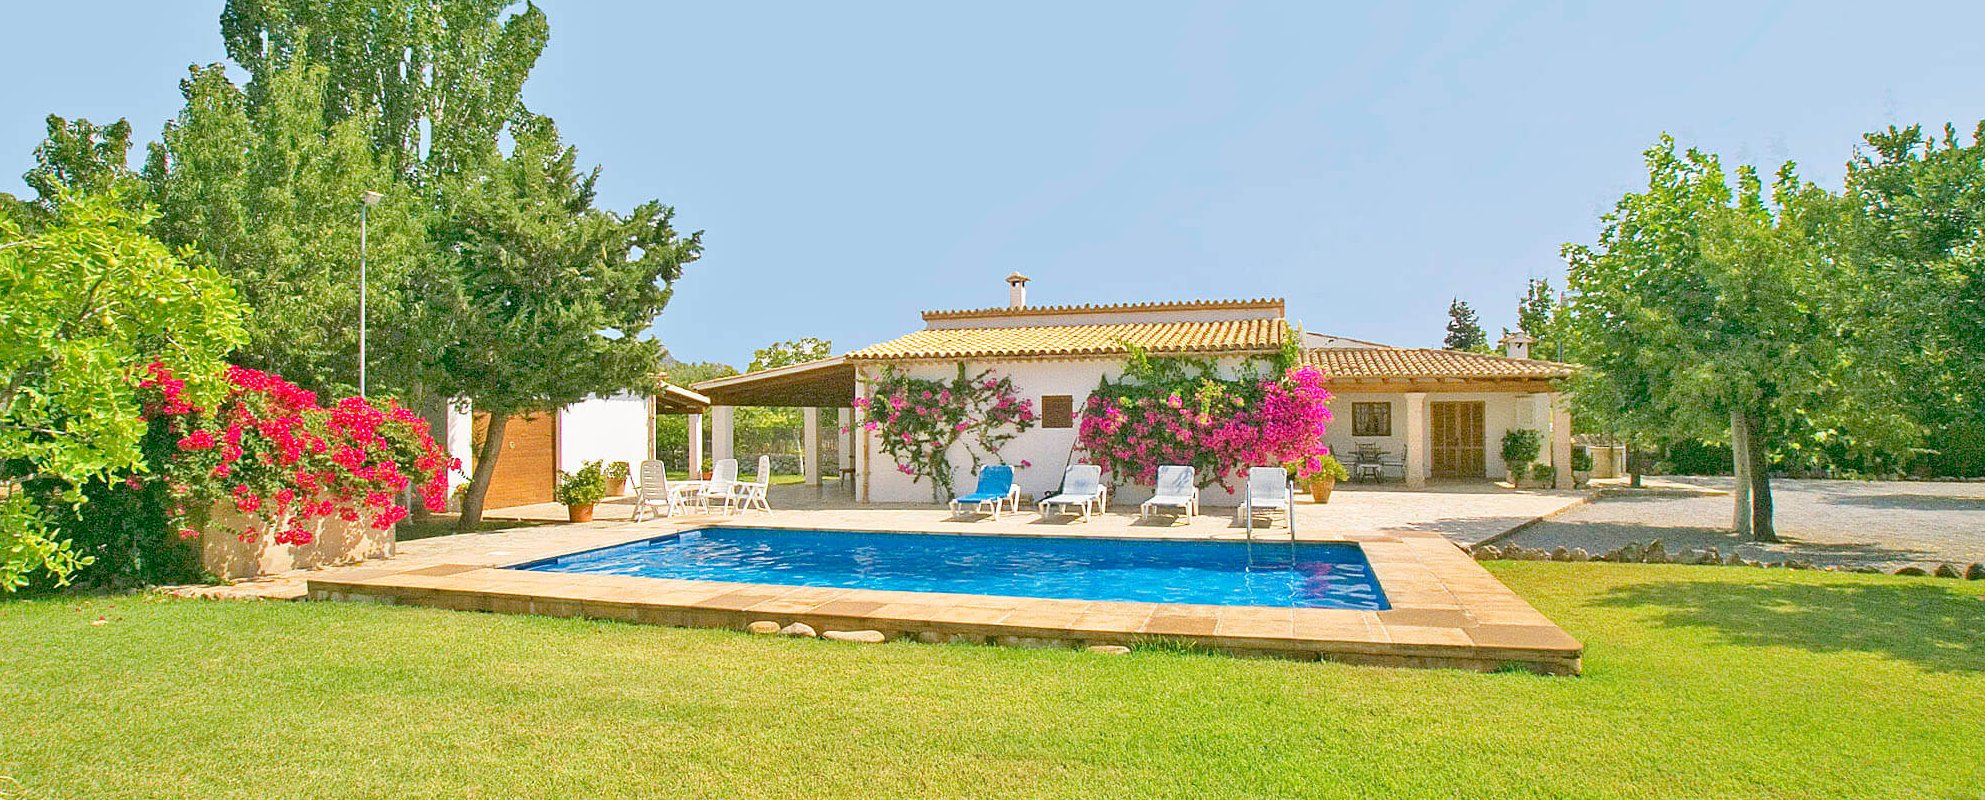 Ferienhaus Mallorca für 6 Personen mit Pool und schönem Garten.